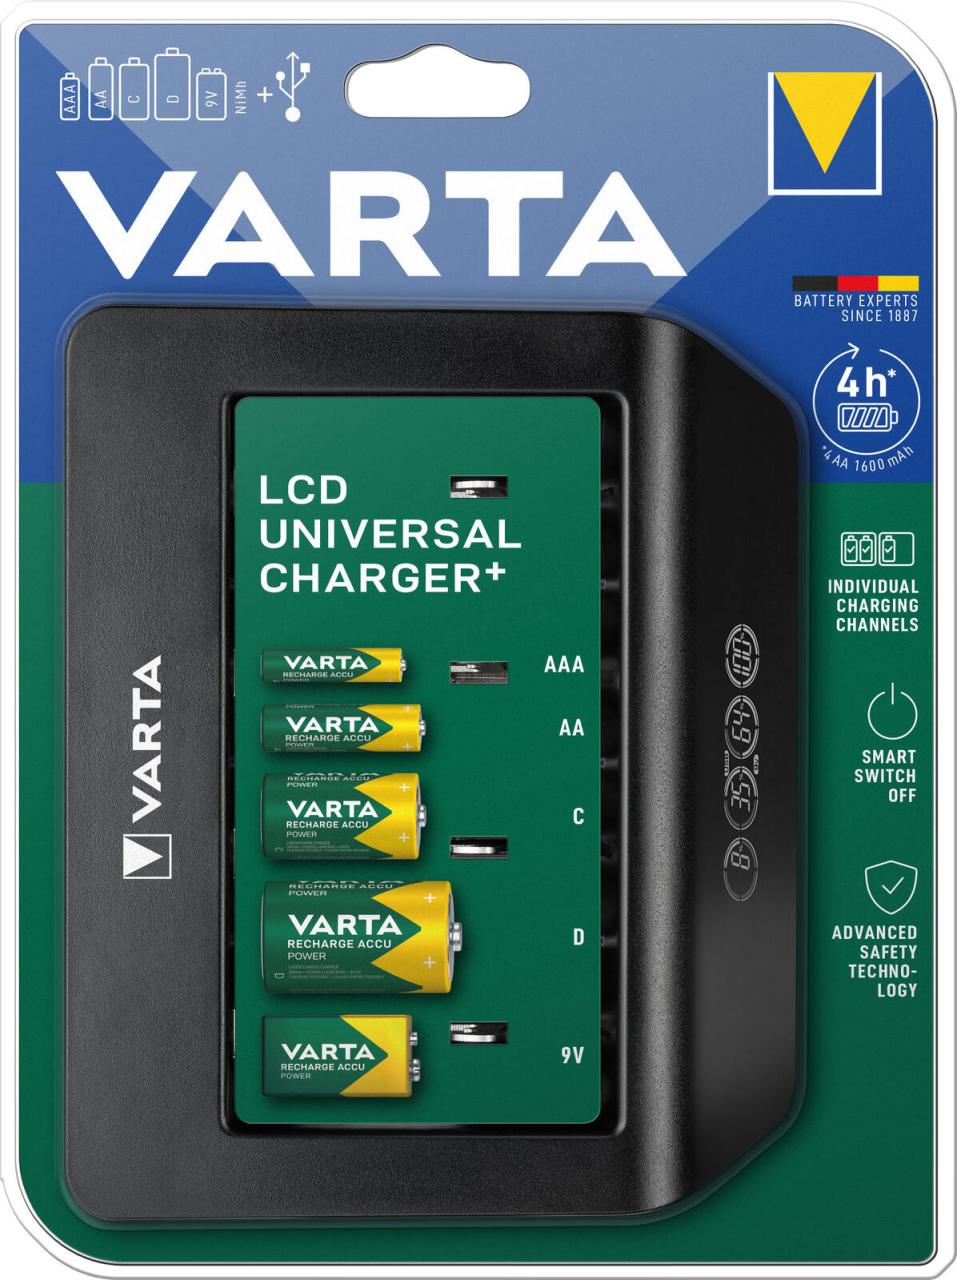 VARTA Akku-Ladegerät Universal Charger+ von Varta